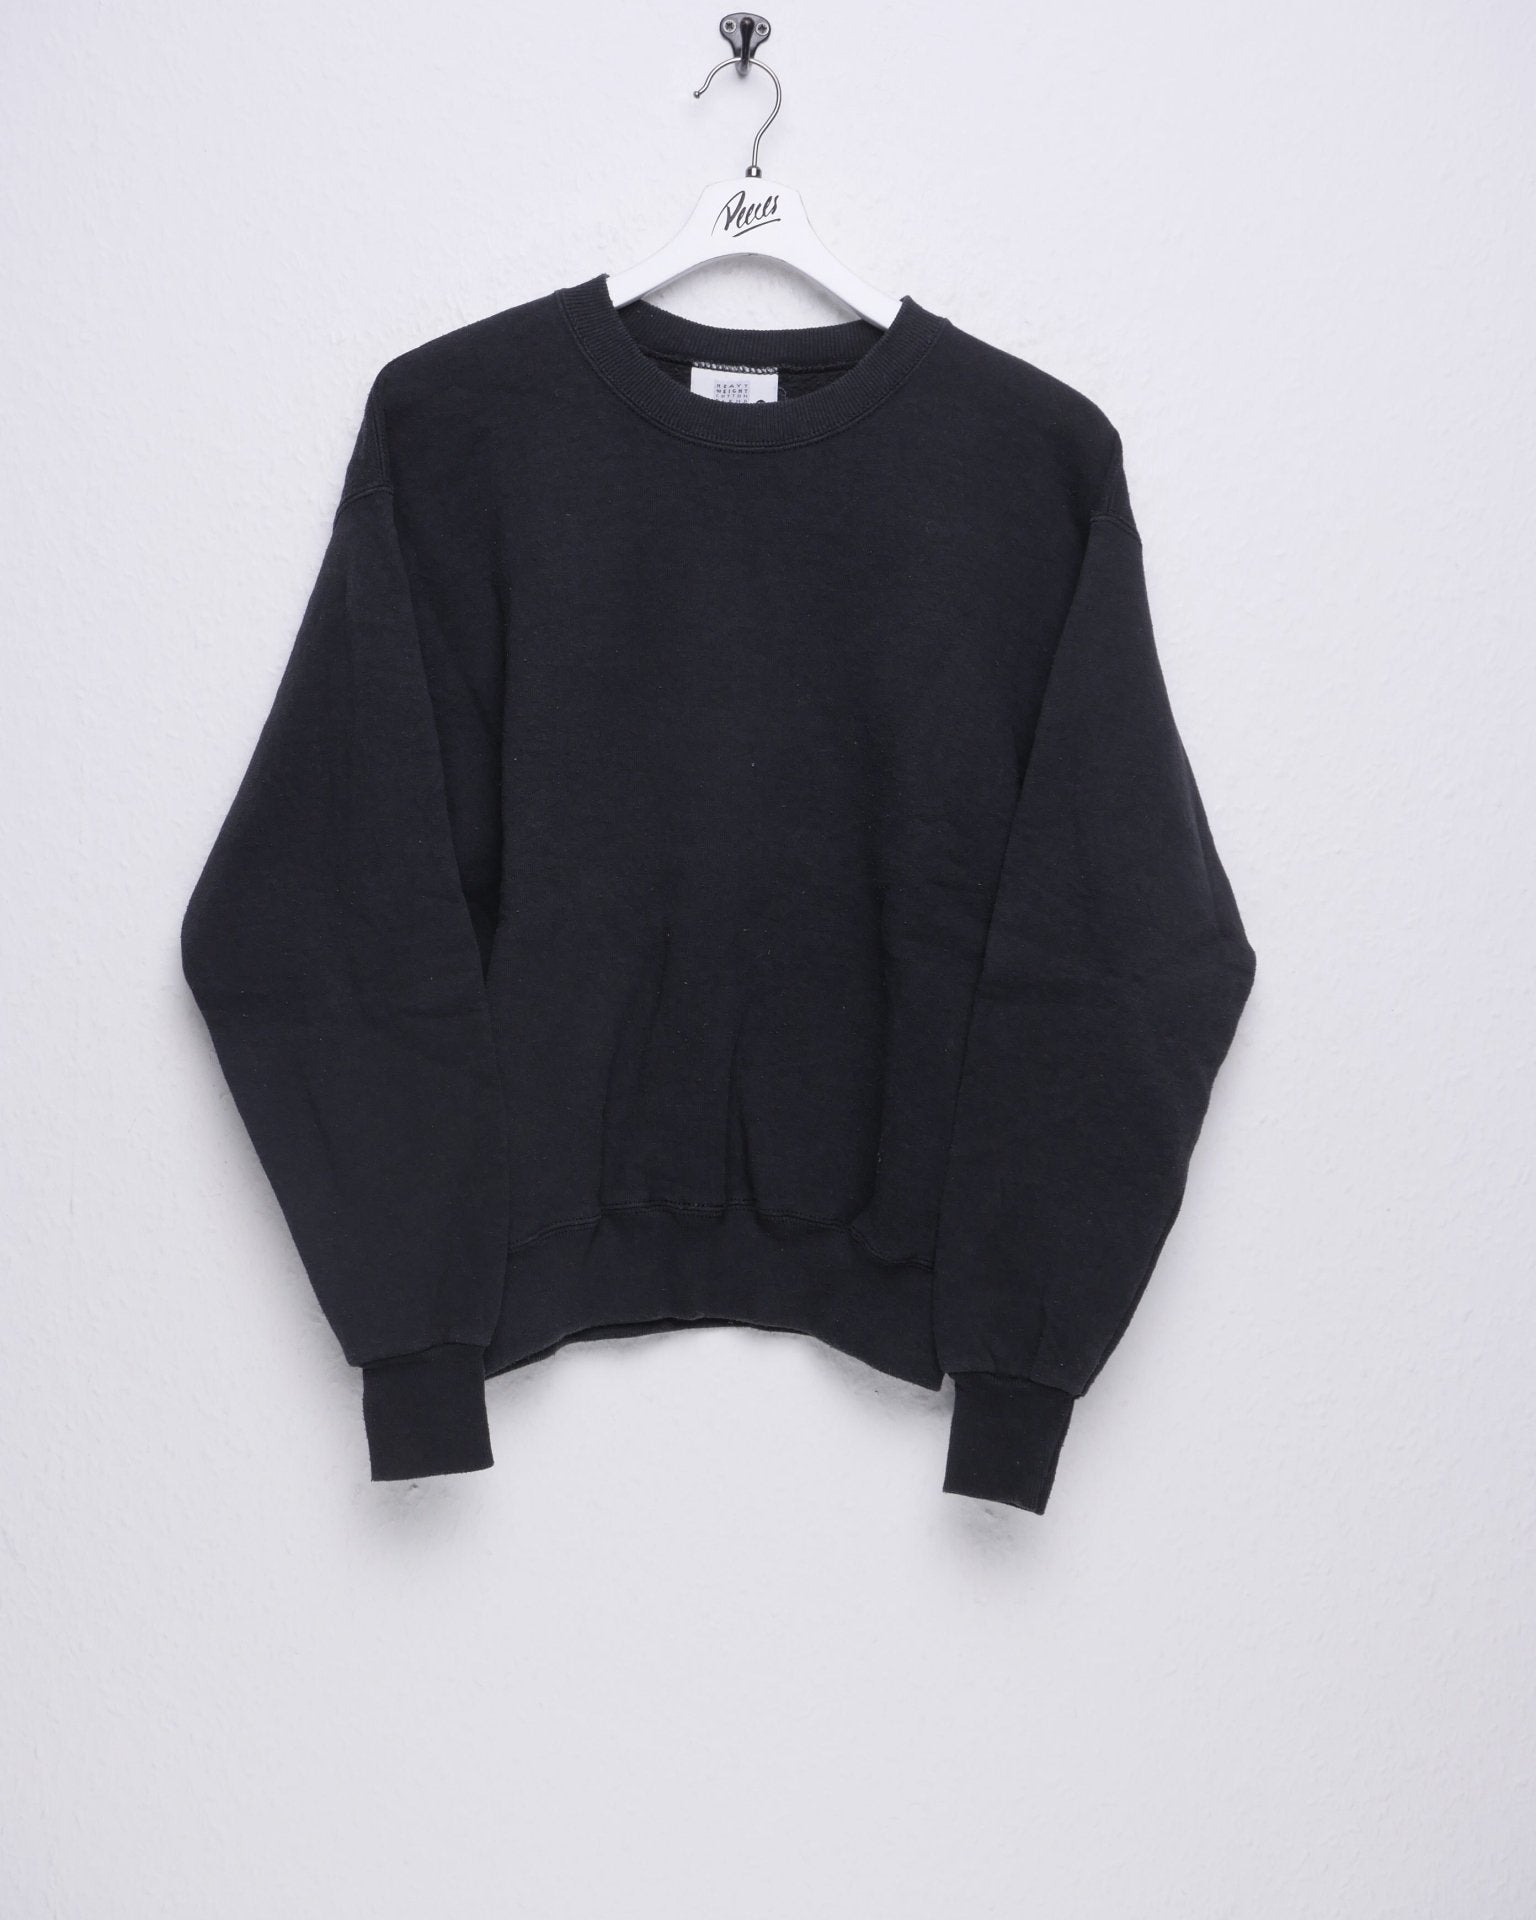 Lee Plain black Vintage basic Sweater - Peeces